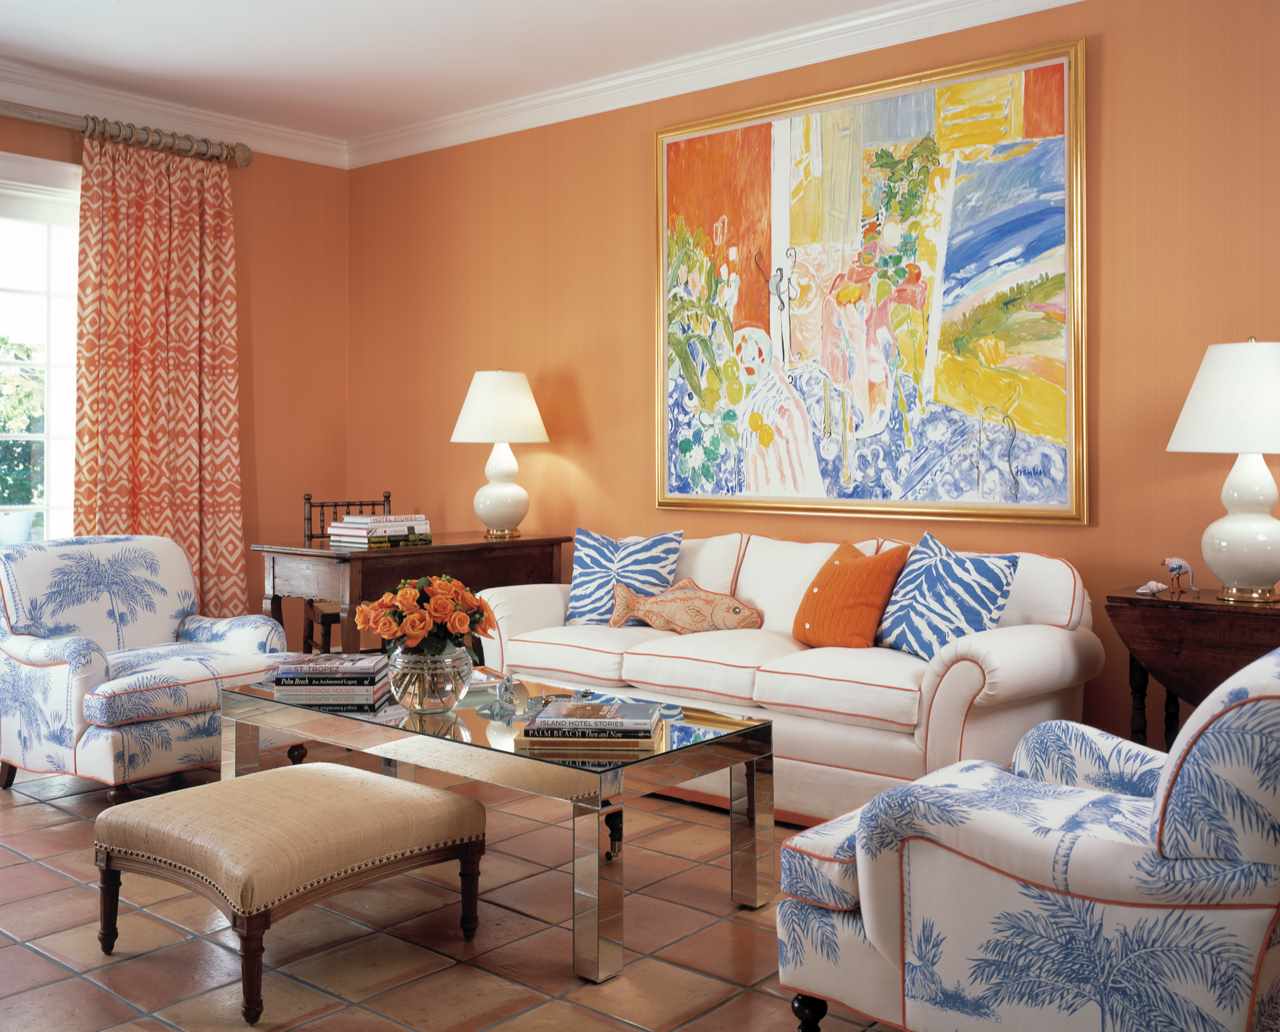 Ryškių persikų spalvų derinio pavyzdys projektuojant butą